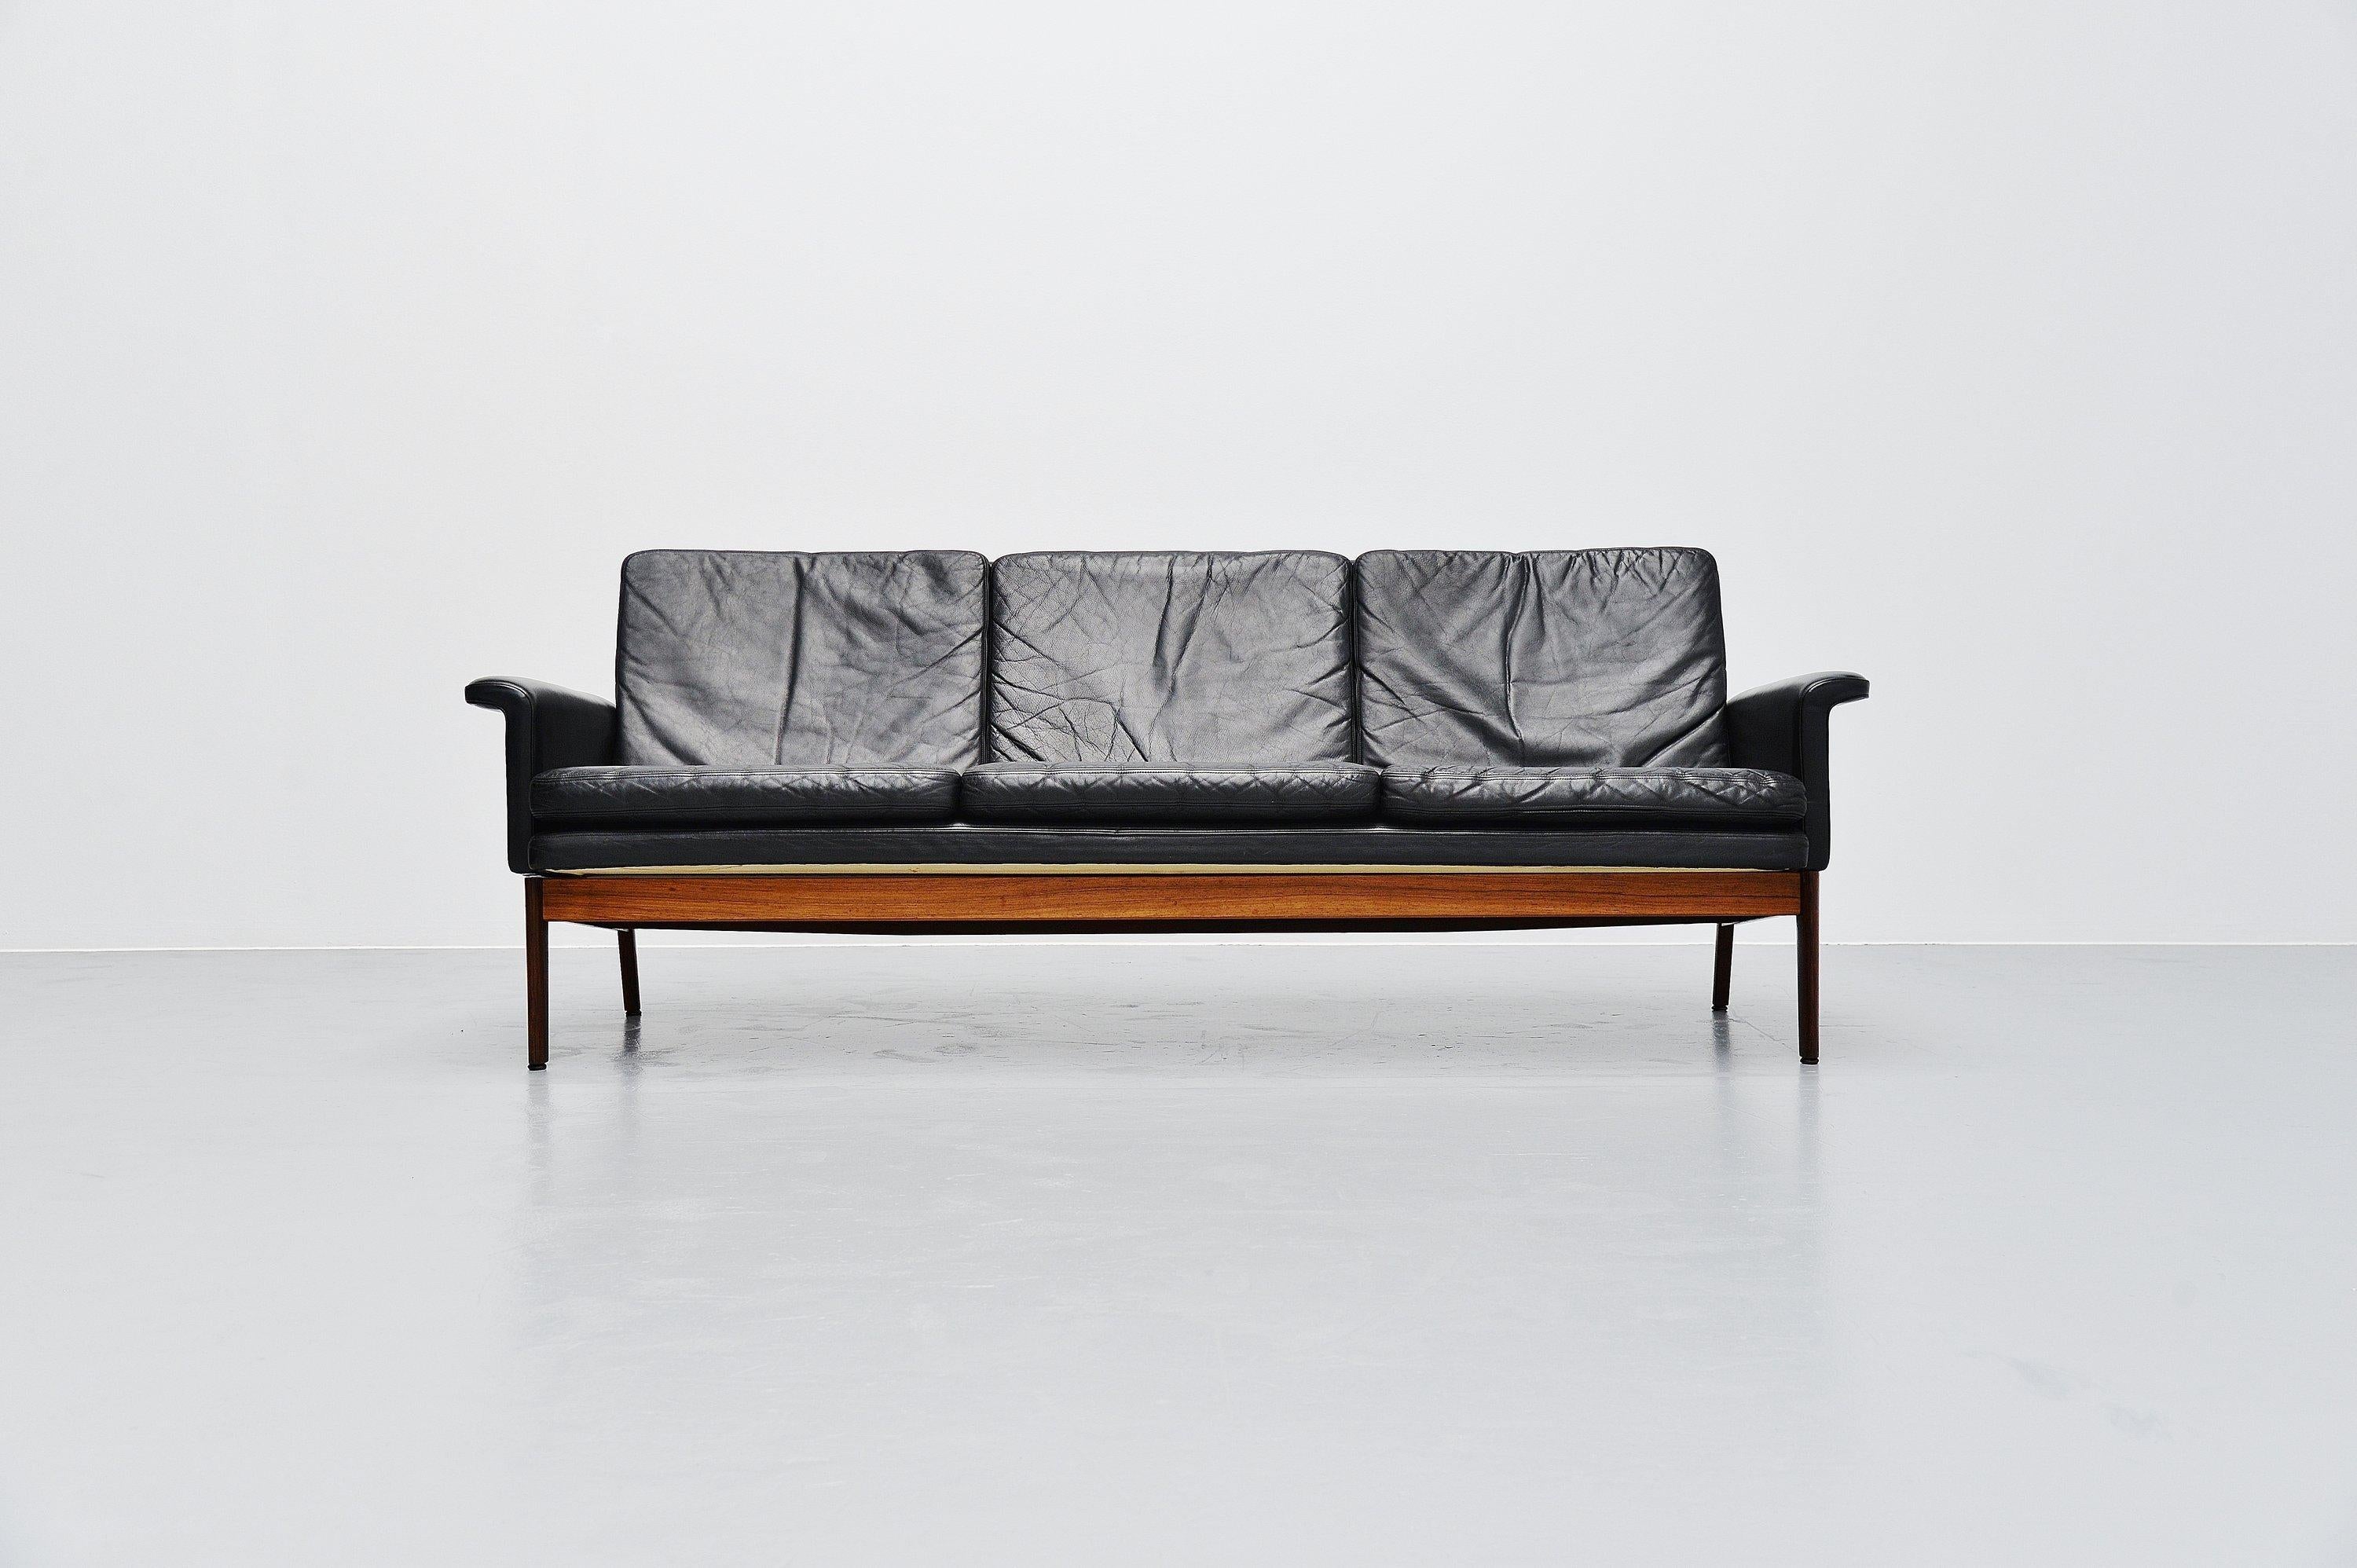 Dänisches modernes sogenanntes Jupiter Sofa Modell 218 entworfen von Finn Juhl und hergestellt von France and Son, Dänemark 1965. Das Sofa hat ein Gestell aus massivem Palisanderholz und Sitzflächen aus schwarzem Leder. Das Sofa ist vollständig